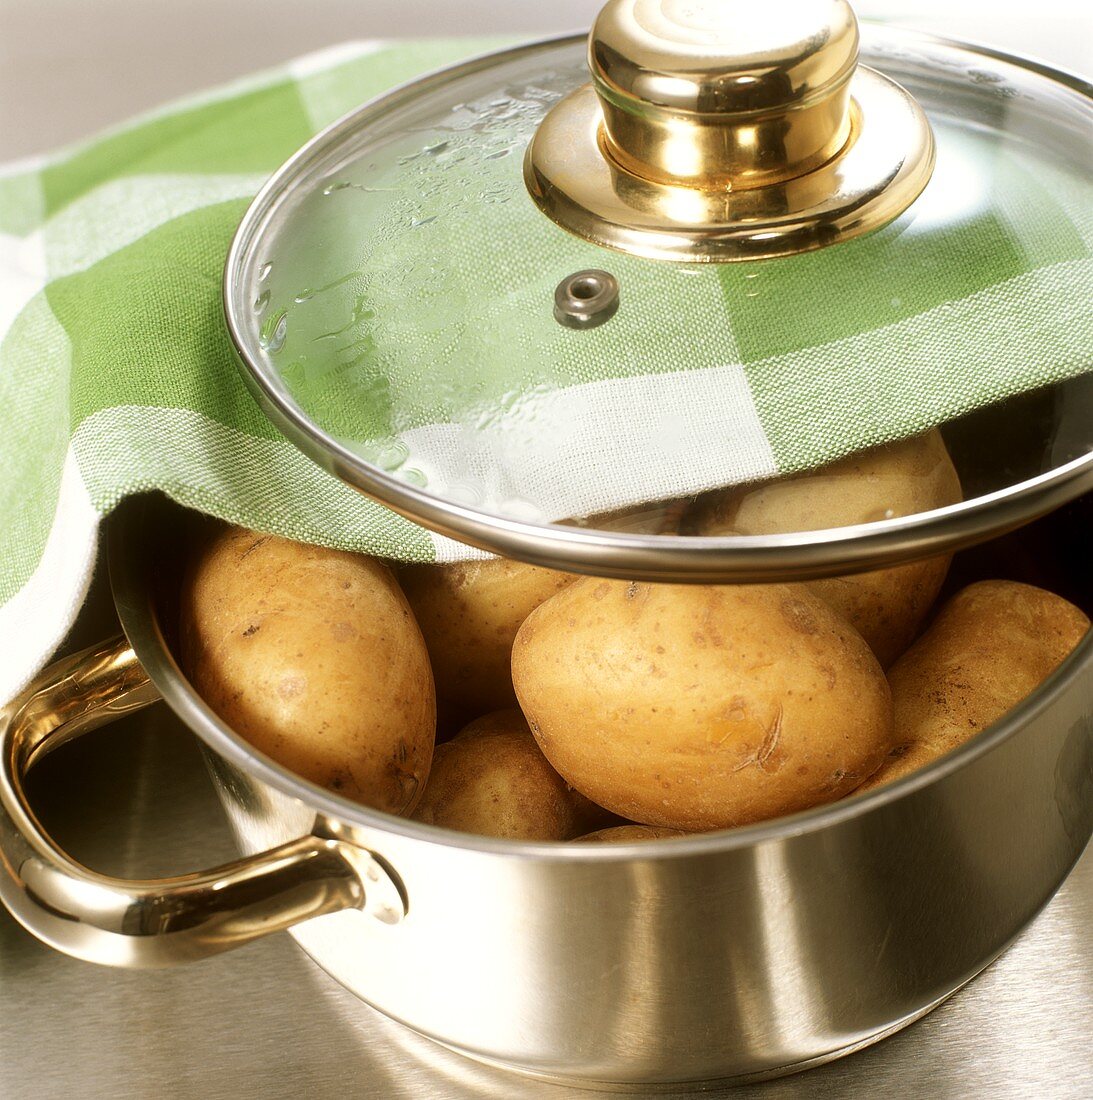 Kartoffeln im Edelstahltopf mit Glasdeckel und Stoffserviette